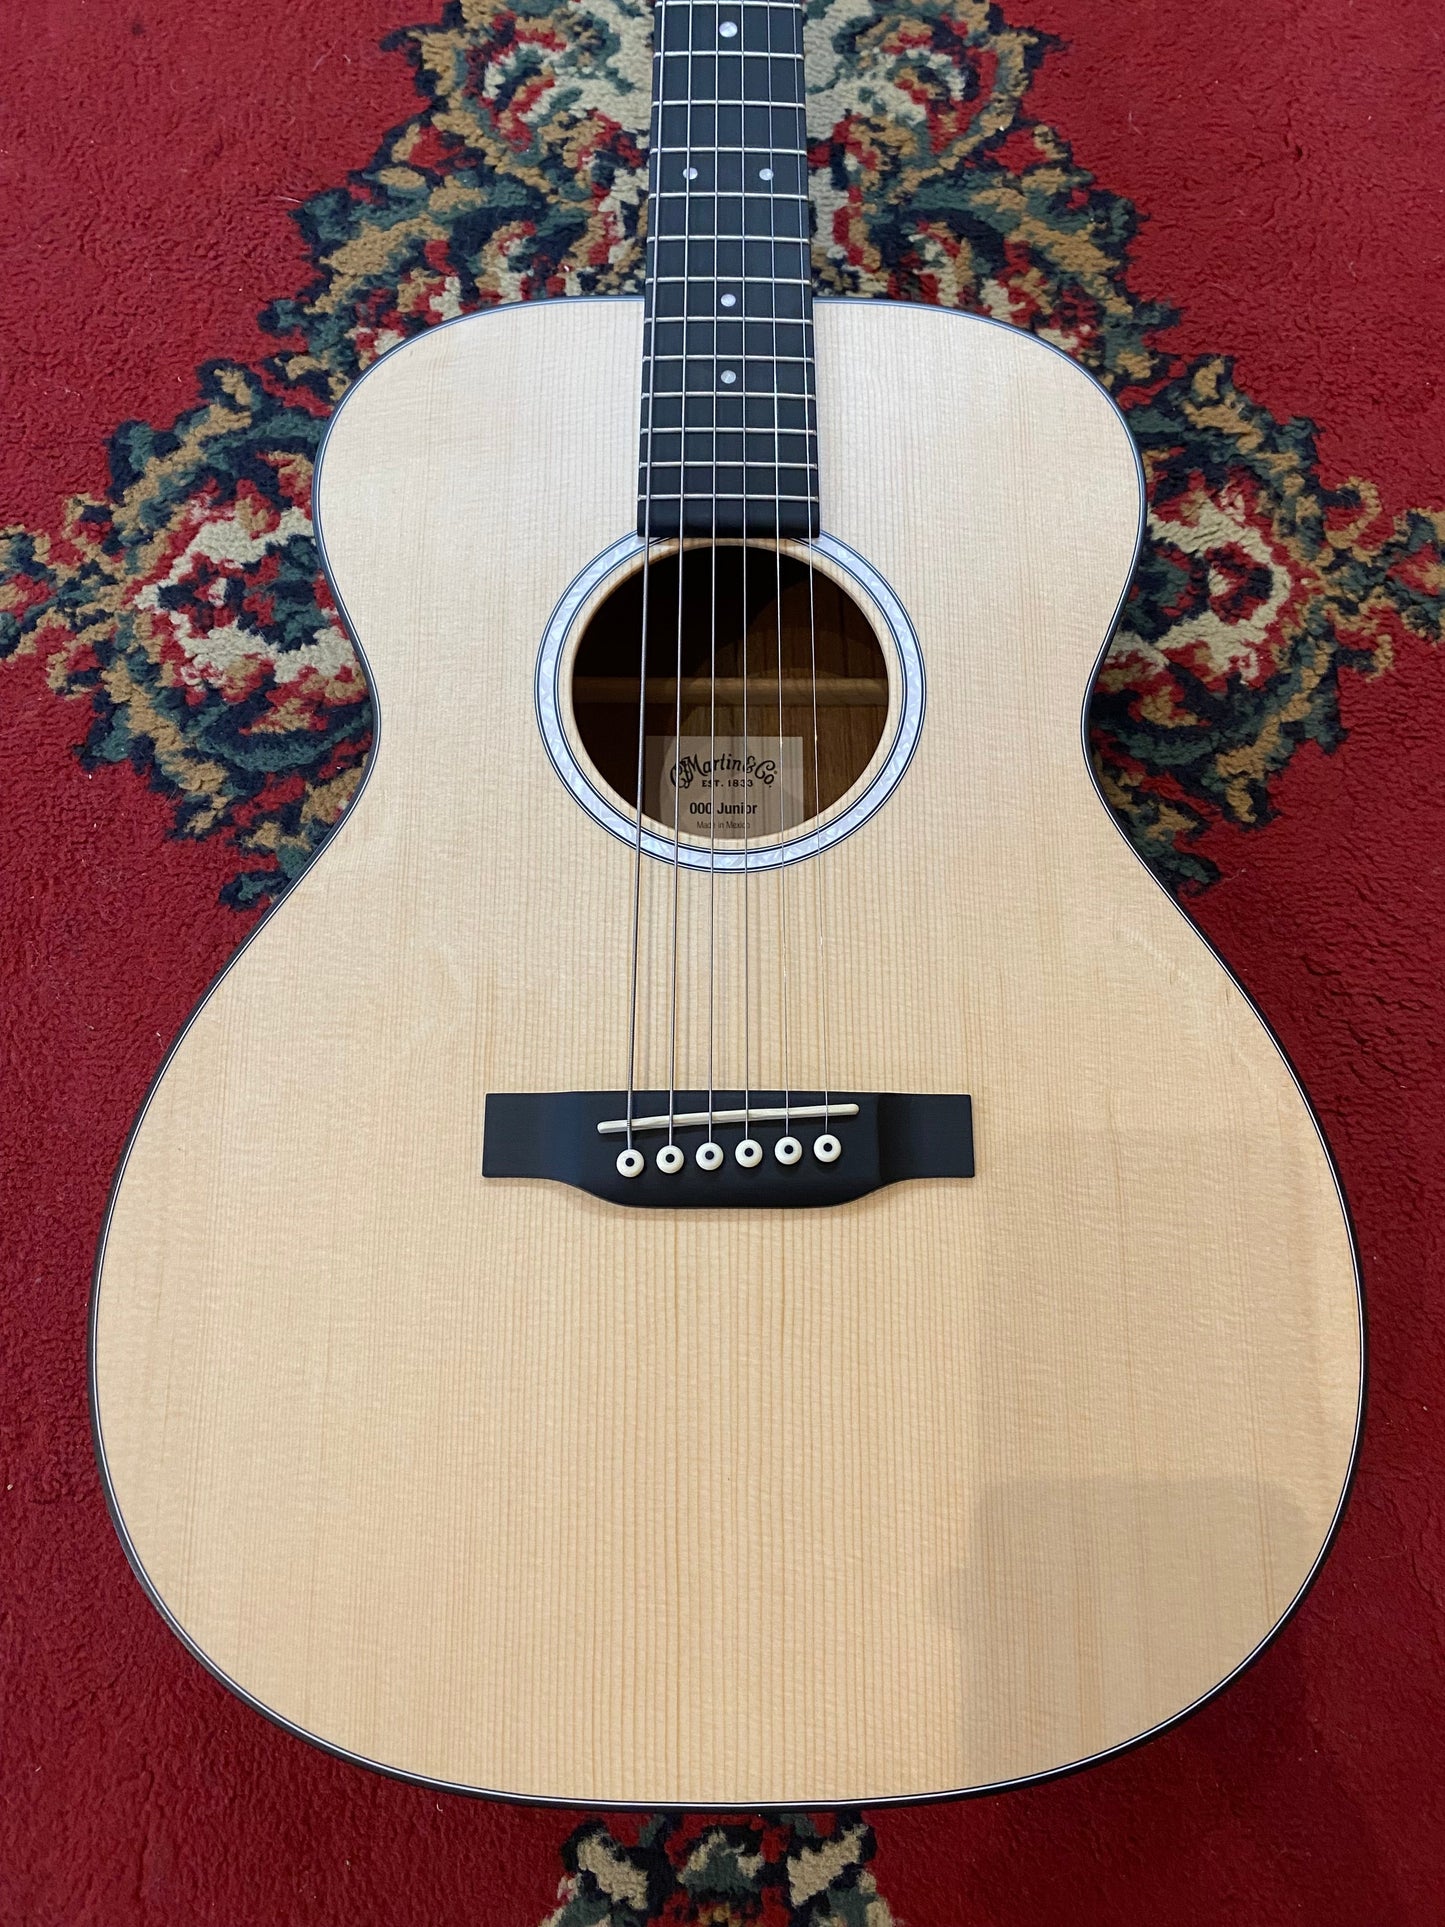 Martin Junior Series 000Jr-10 Acoustic Guitar